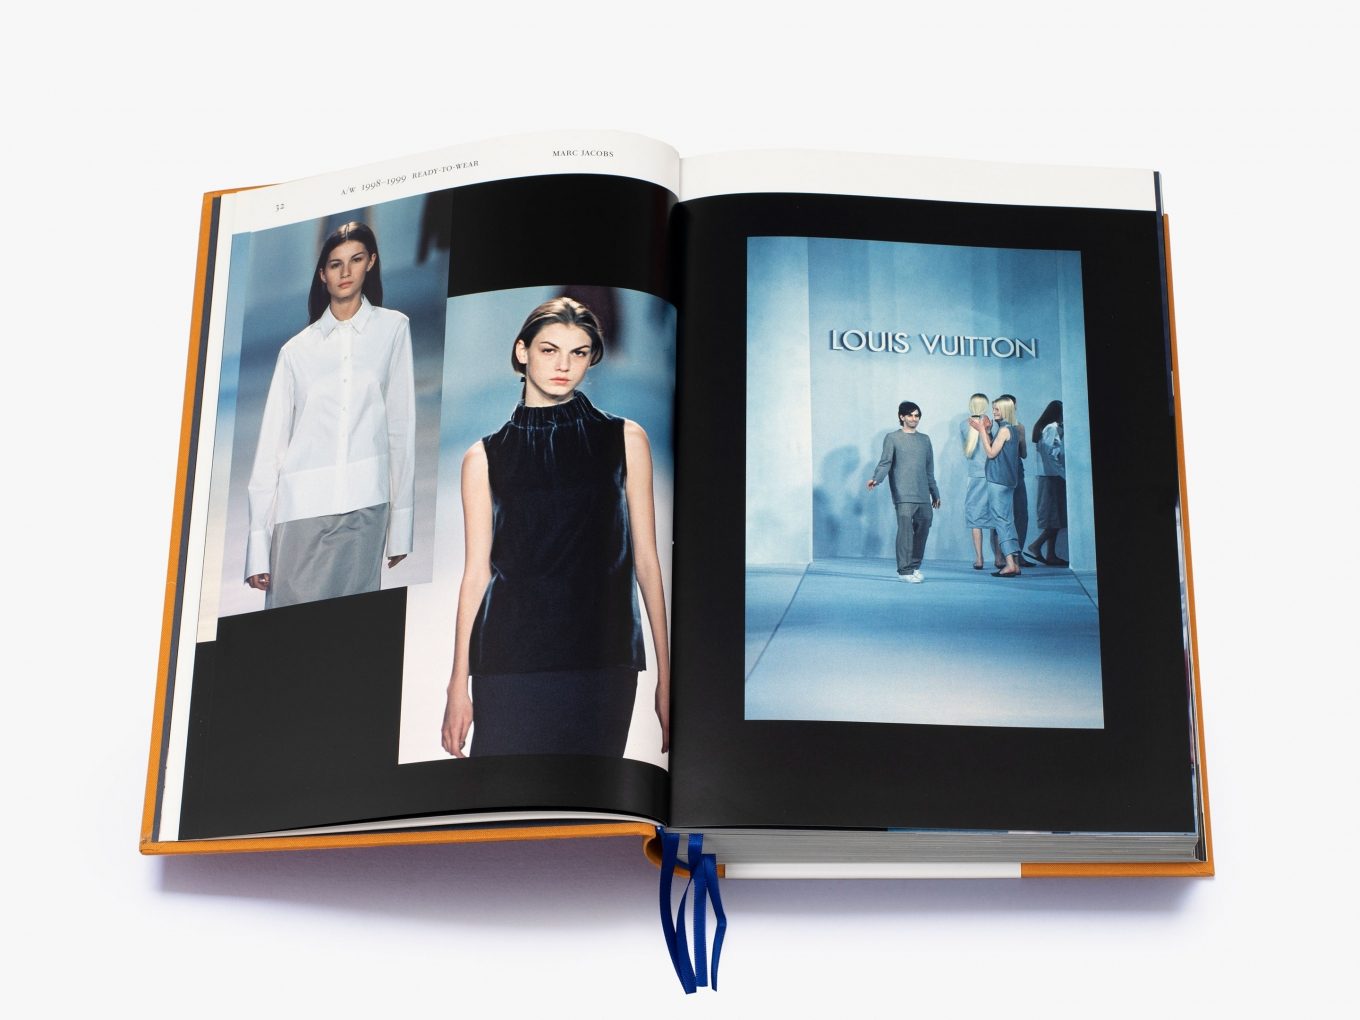 Louis Vuitton Catwalk [Book]